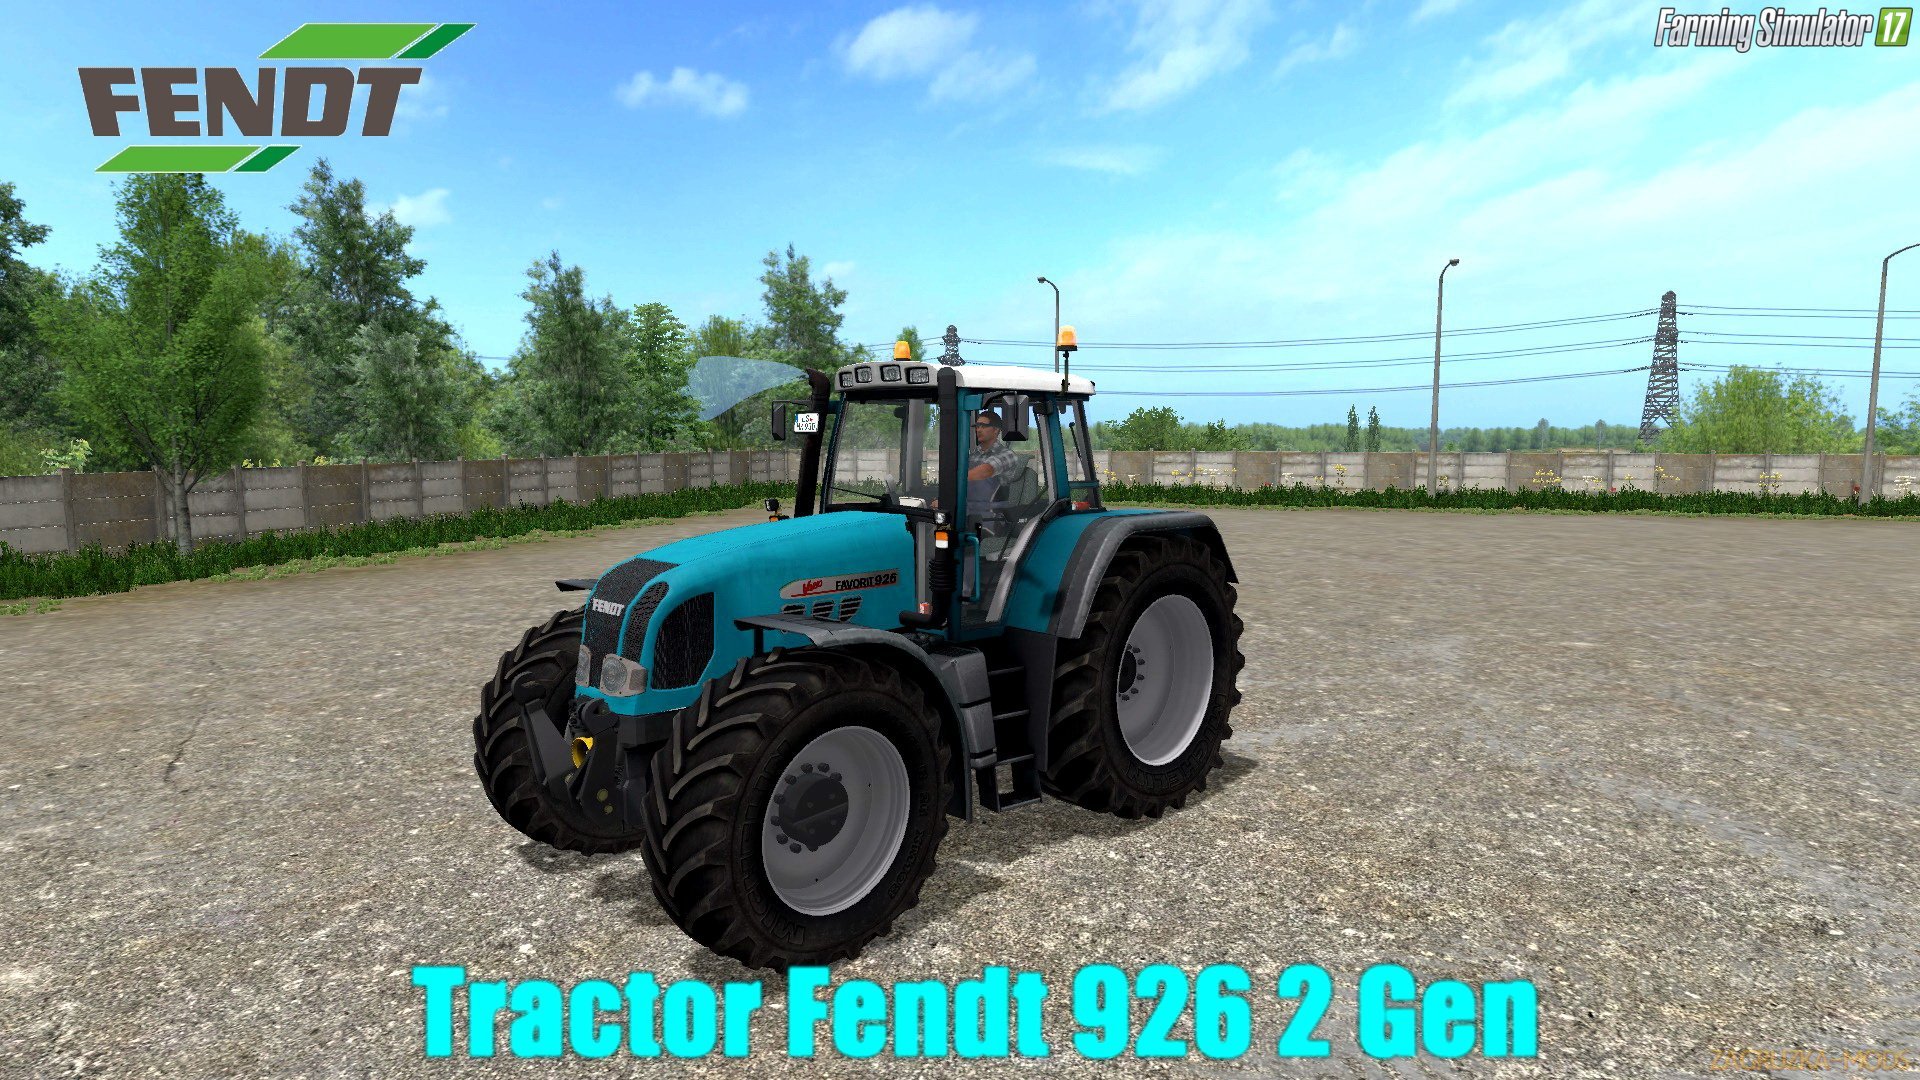 Fendt 926 2 Gen v1.0 for FS 17